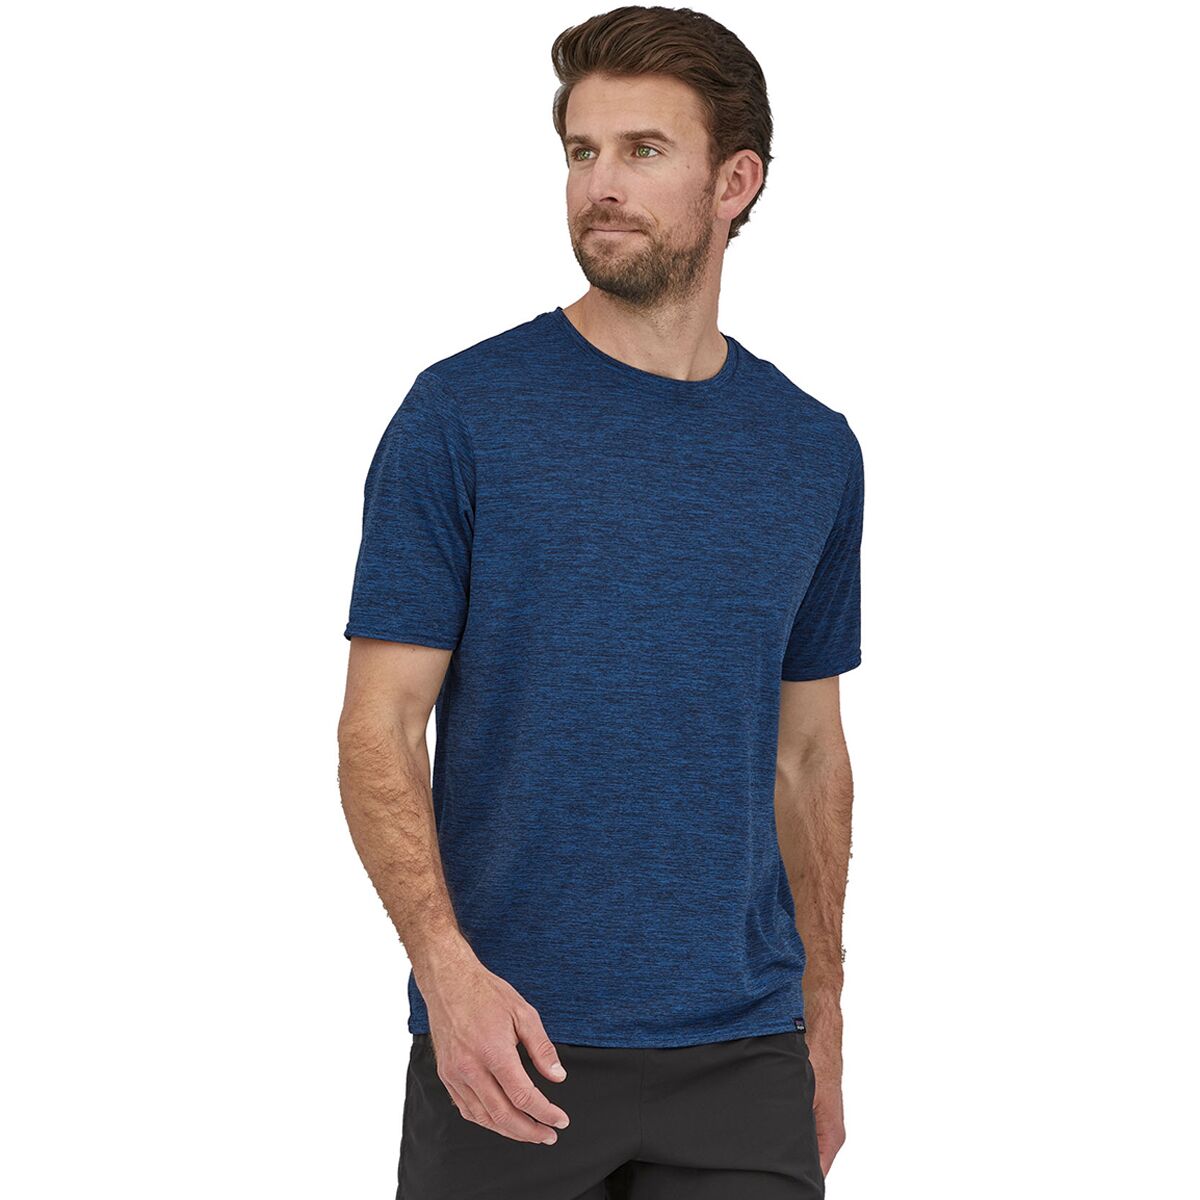 Capilene Cool Daily Short-Sleeve Shirt - Men